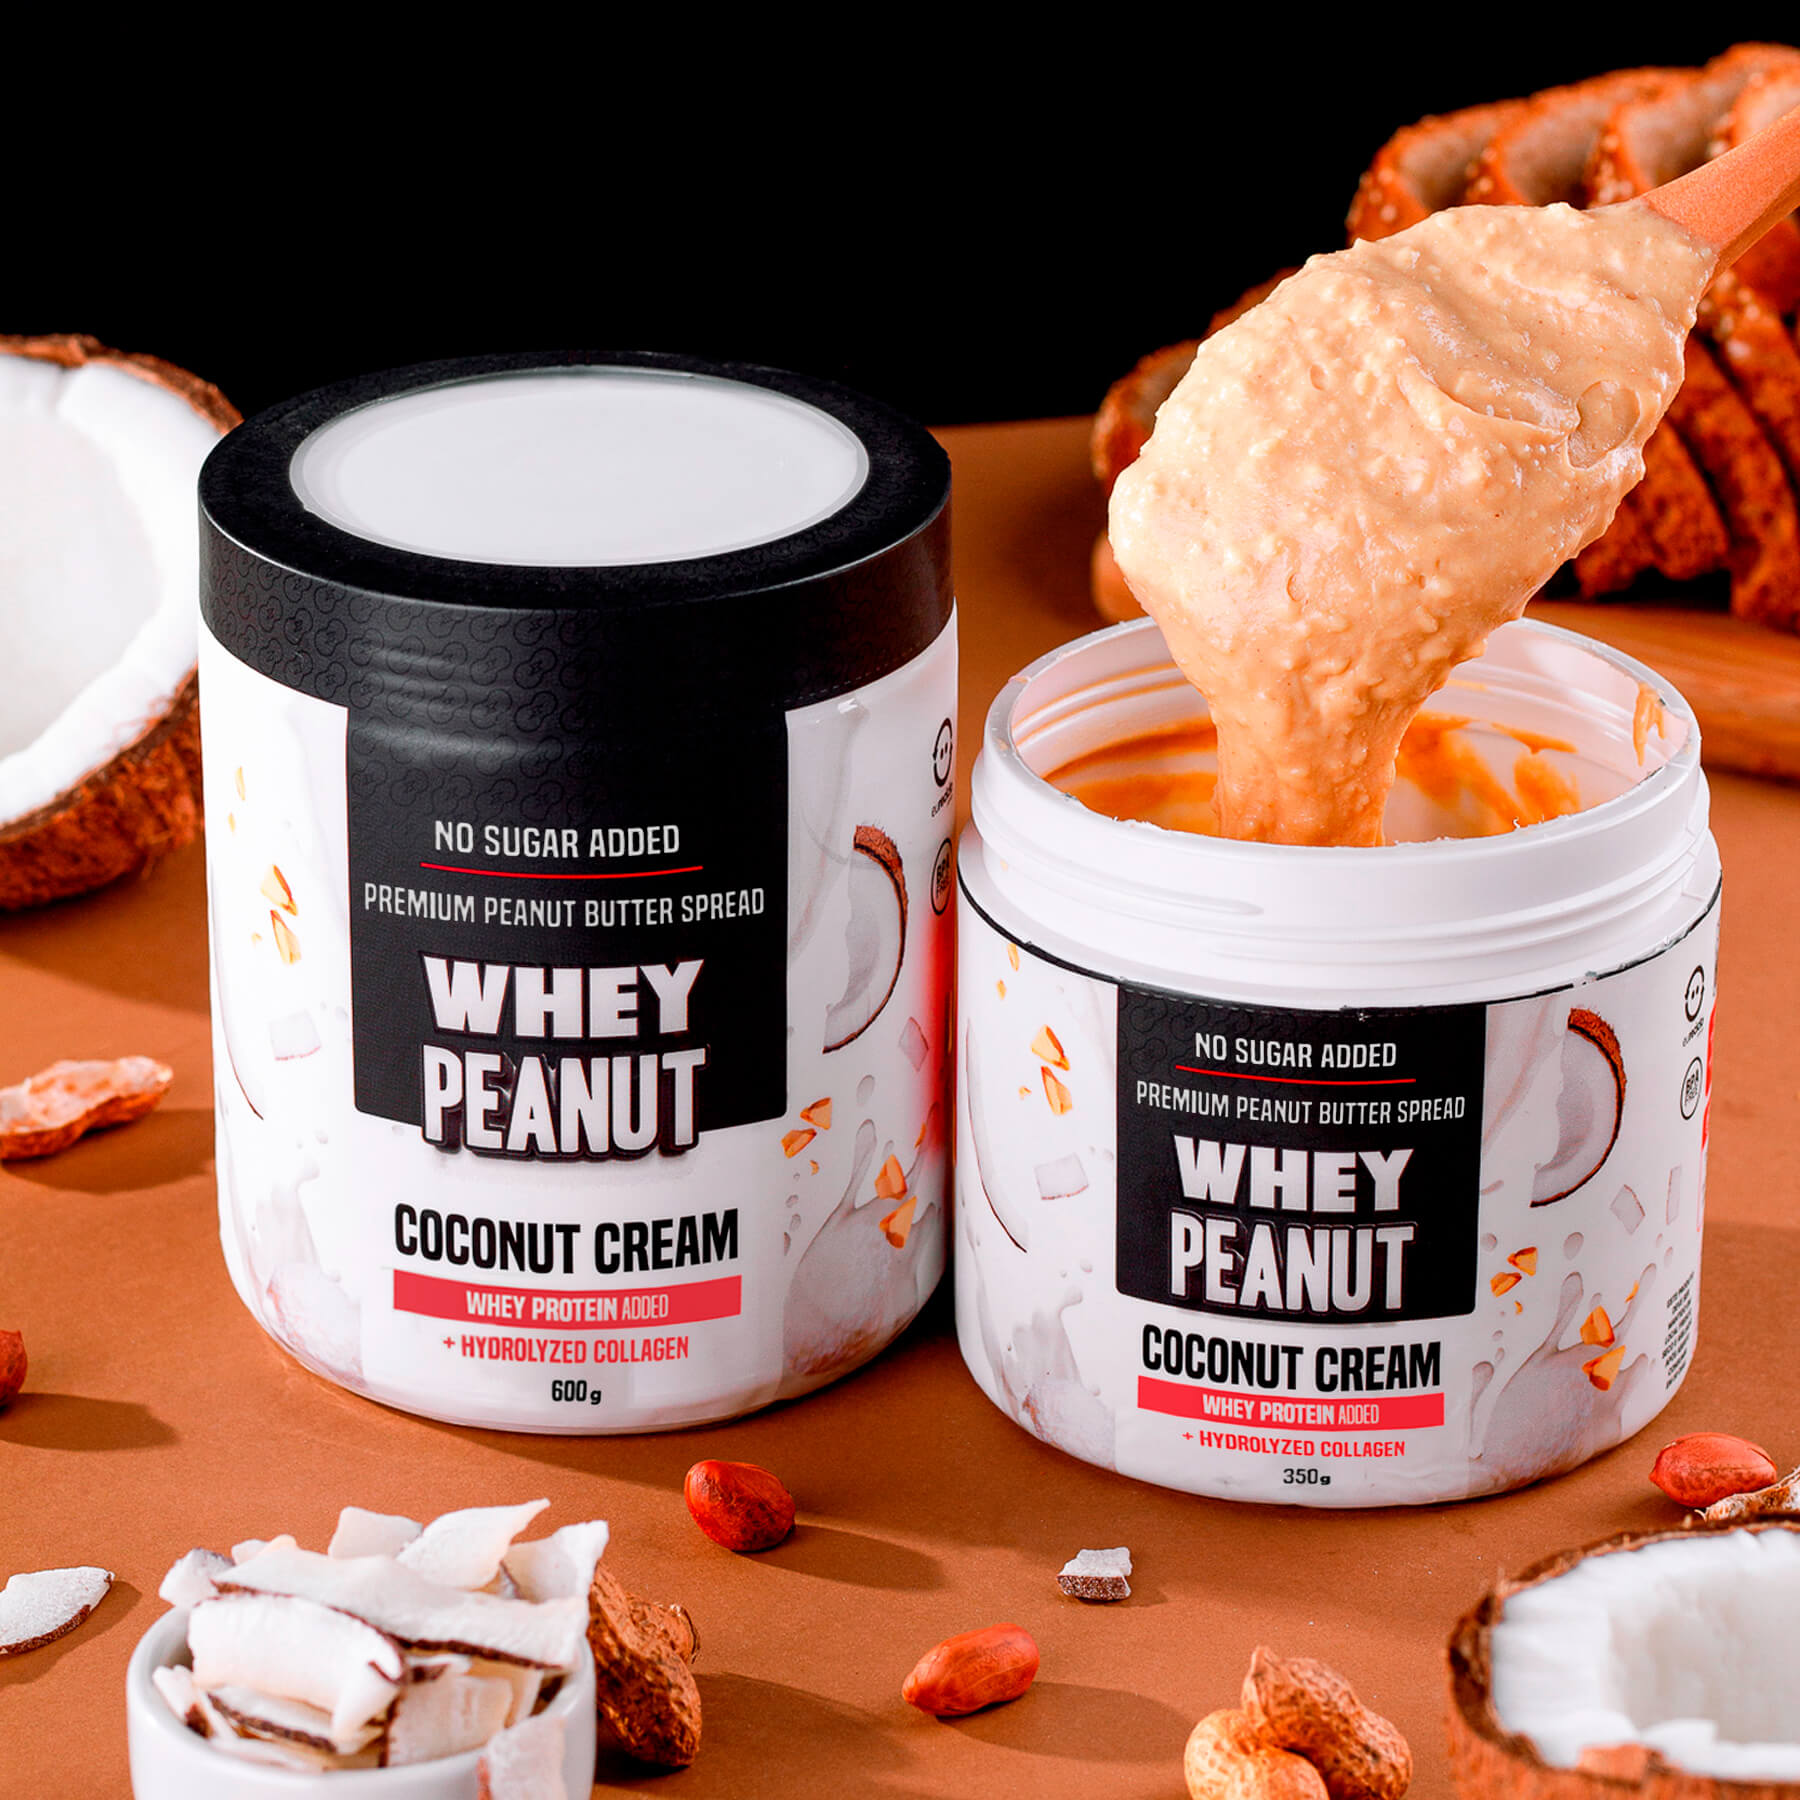 Whey Peanut - Coconut Cream - Protein Spread